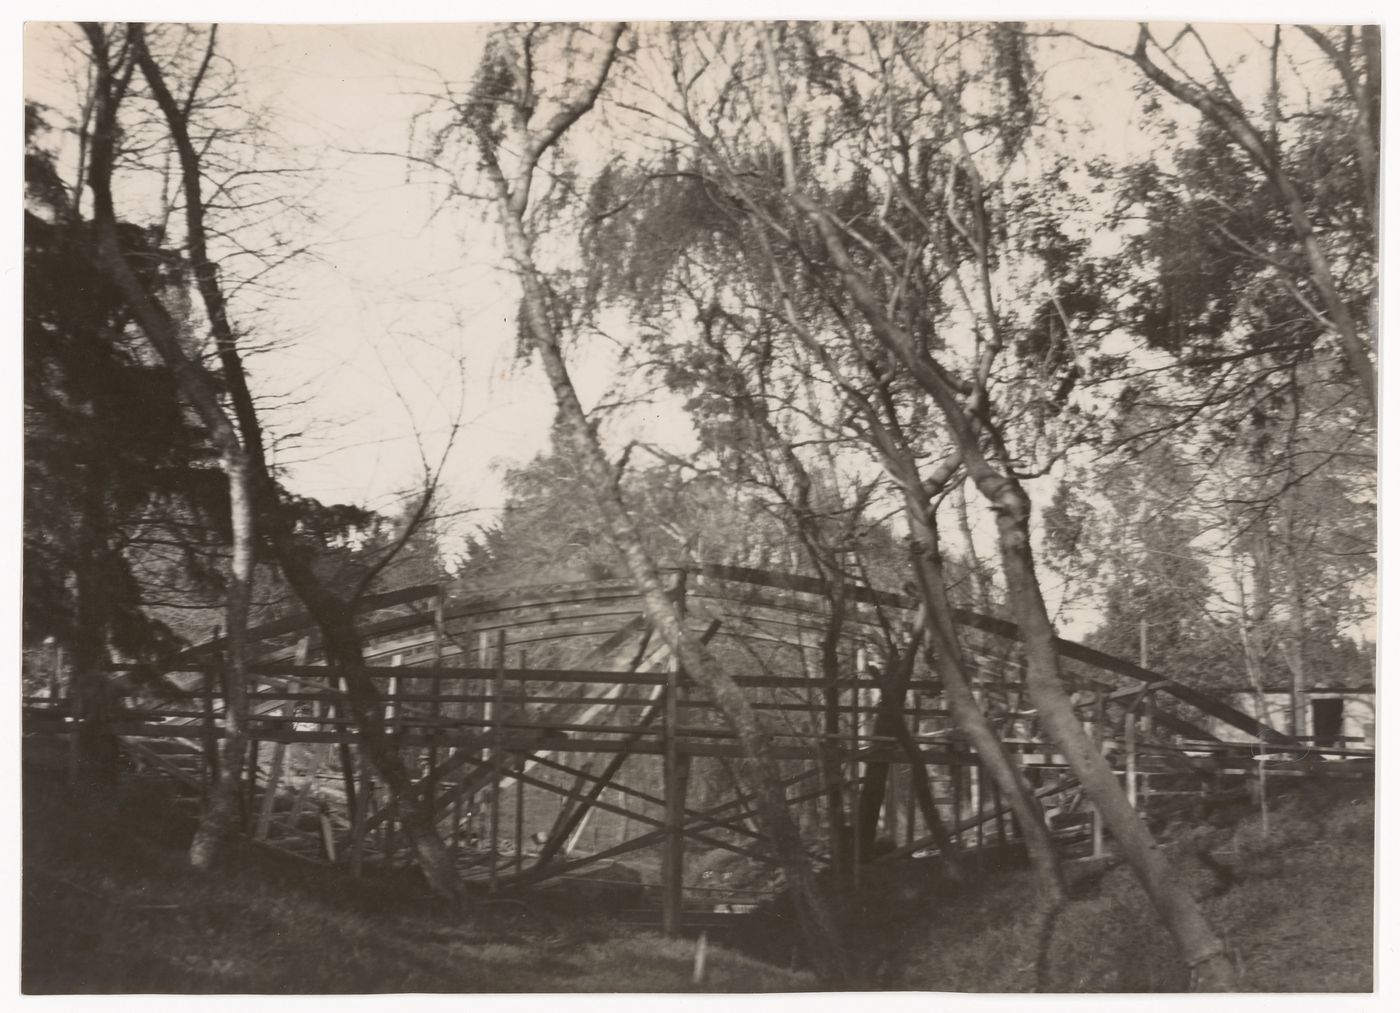 Photograph of wood structure for the construction of Casa sobre el arroyo, Mar del Plata, Argentina